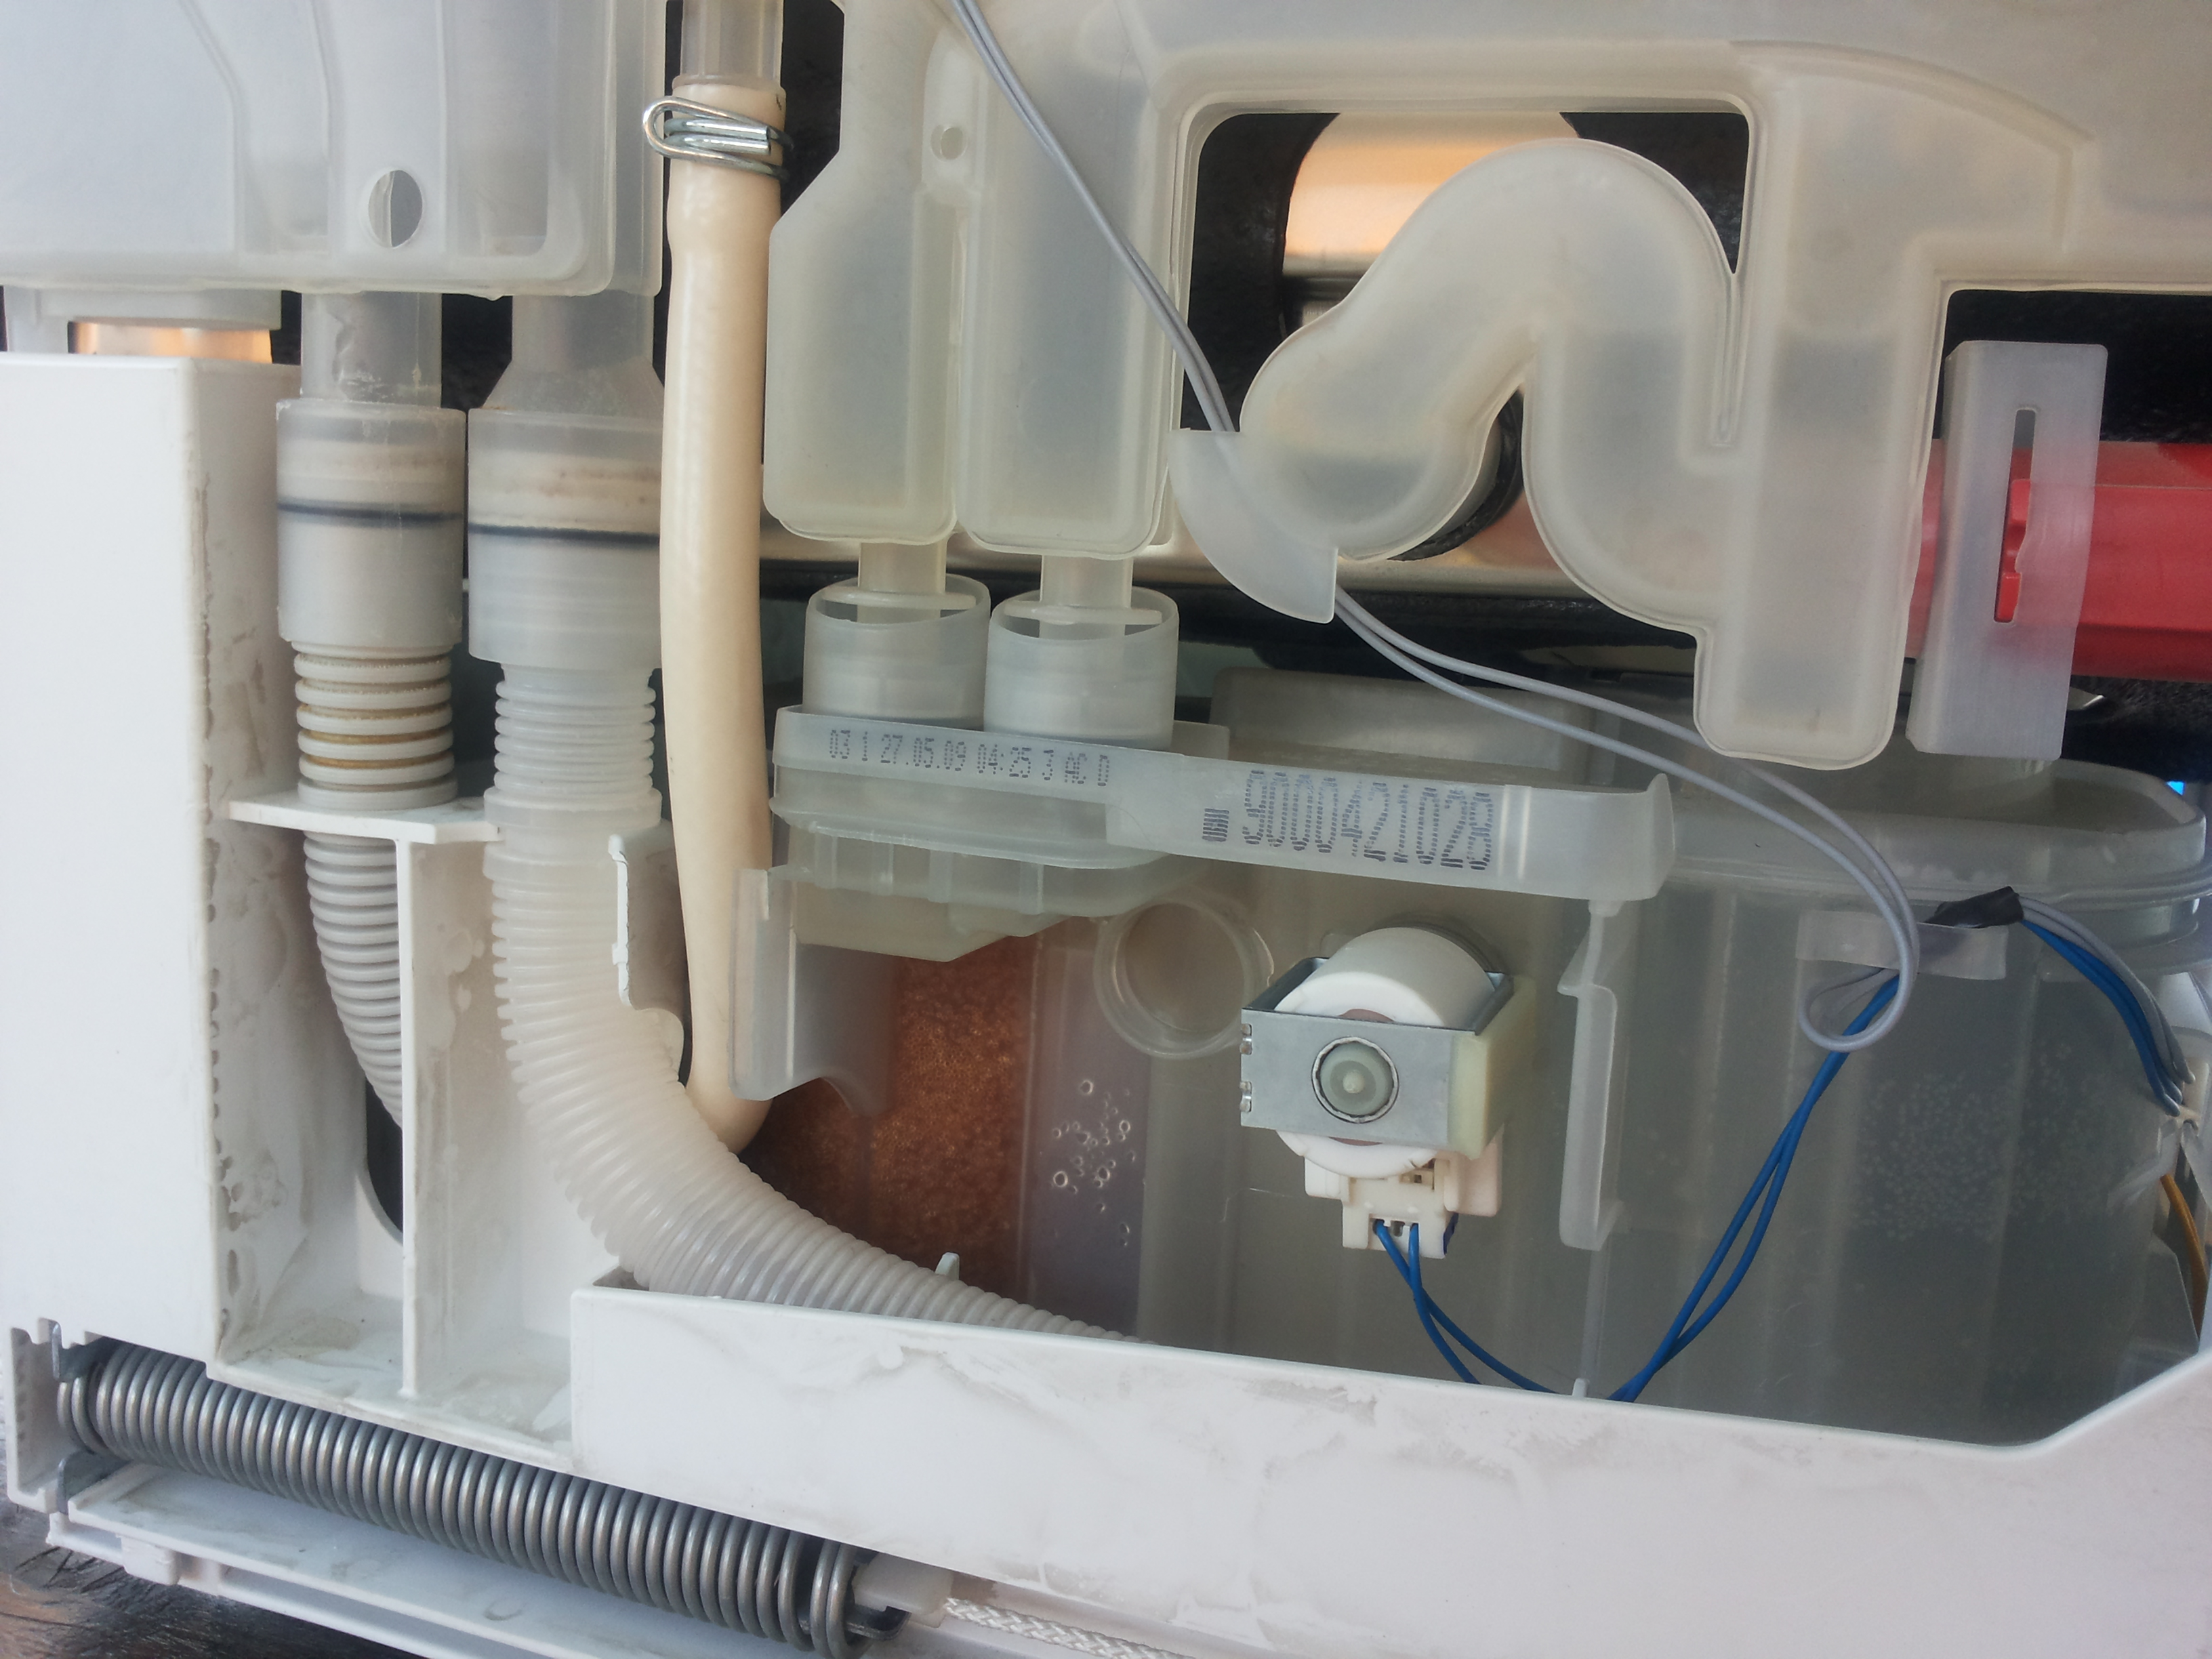 Вода в посудомойке бош. Посудомоечная машина Bosch srv43m13eu. Прессостат воды посудомоечной машины Bosch. Сливной фильтр посудомоечной машины Bosch. ПММ Bosch SRV 43m13.